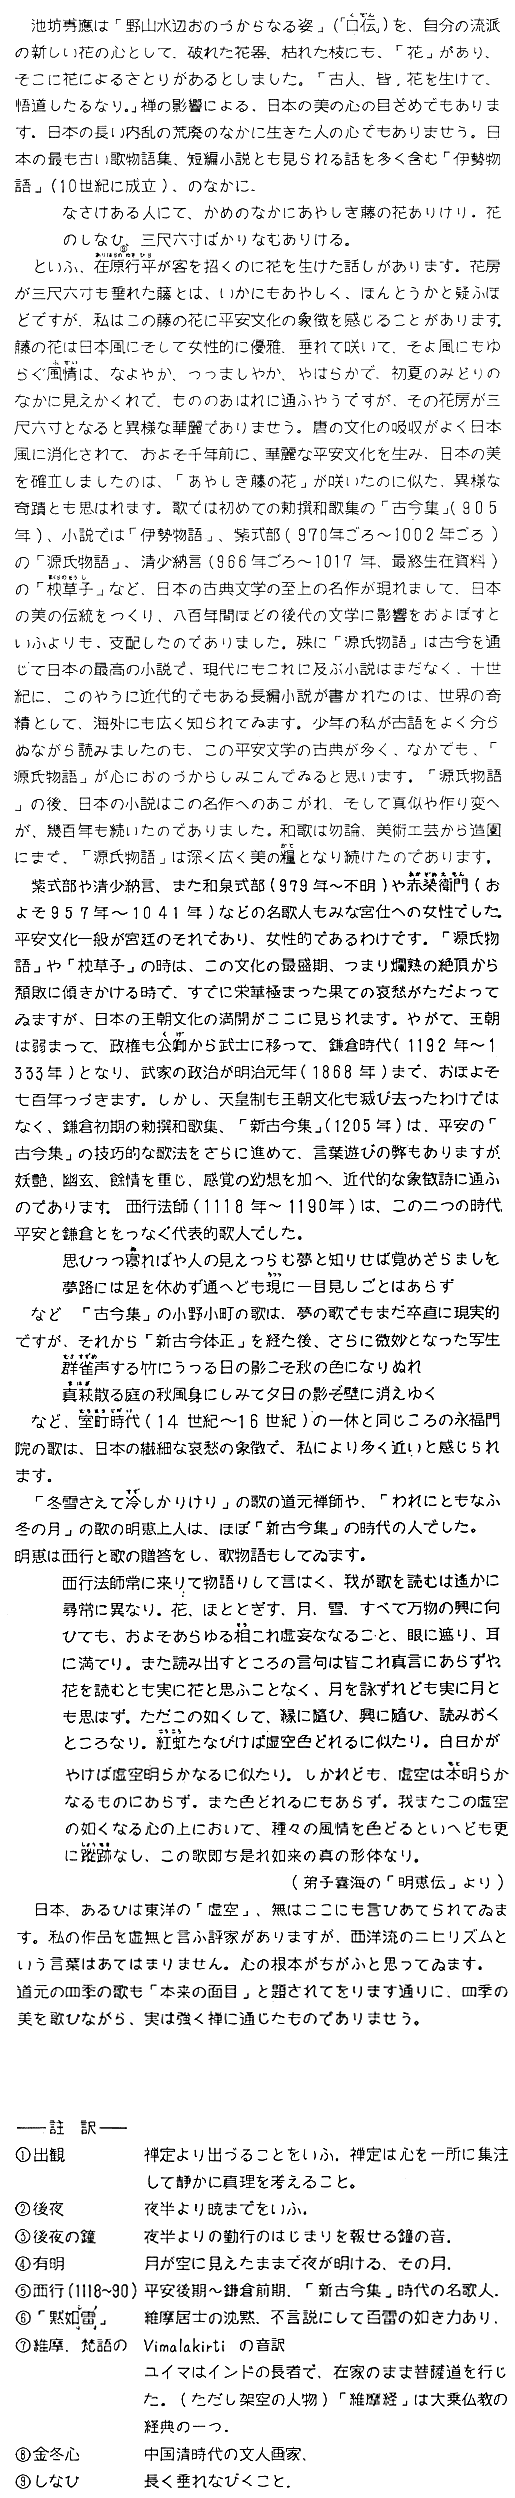 manbet手机版诺贝尔奖演讲的日文文本